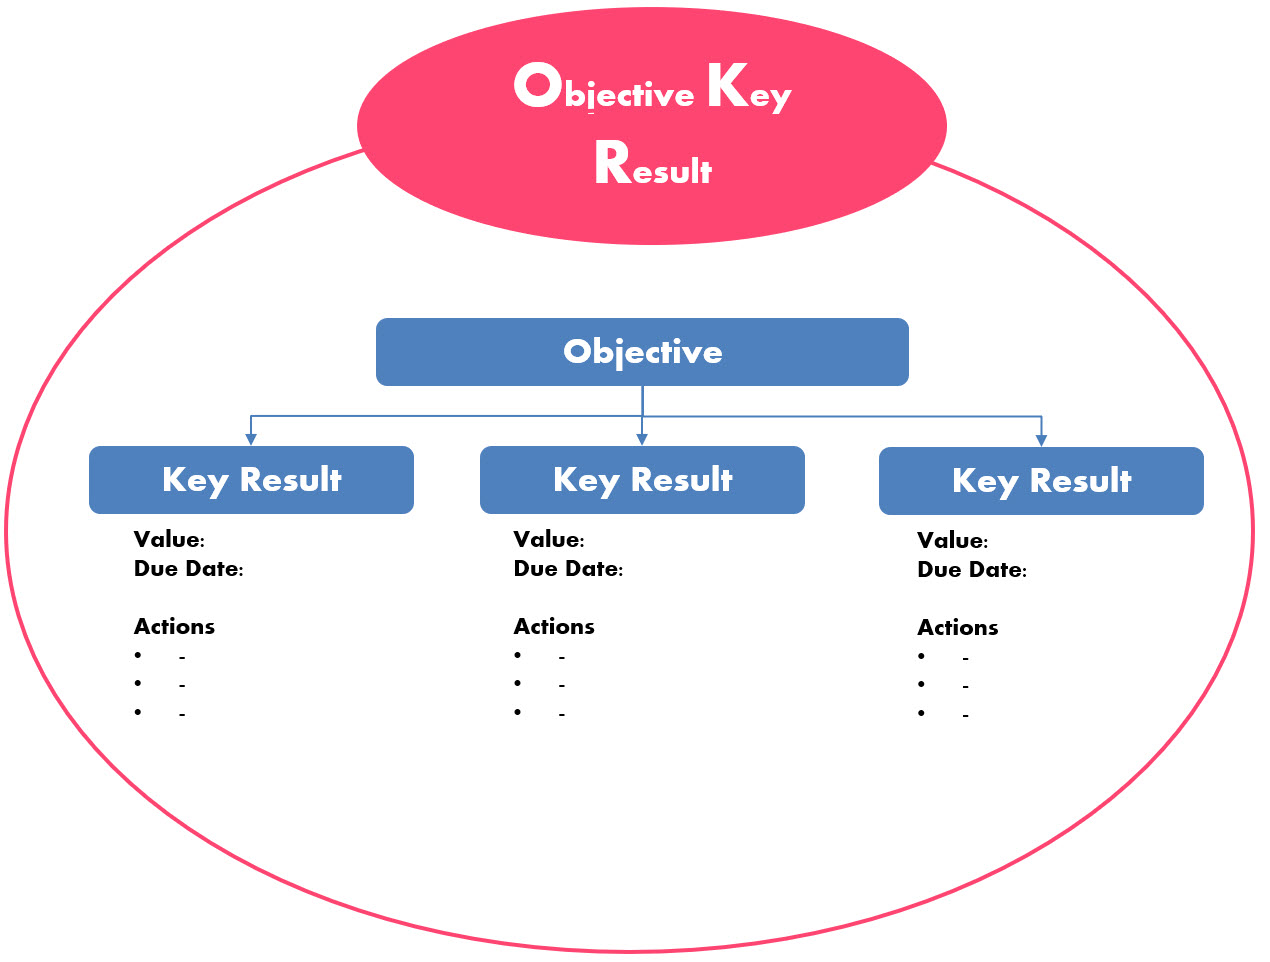 Objectifs et Resultats Clefs (OKR)